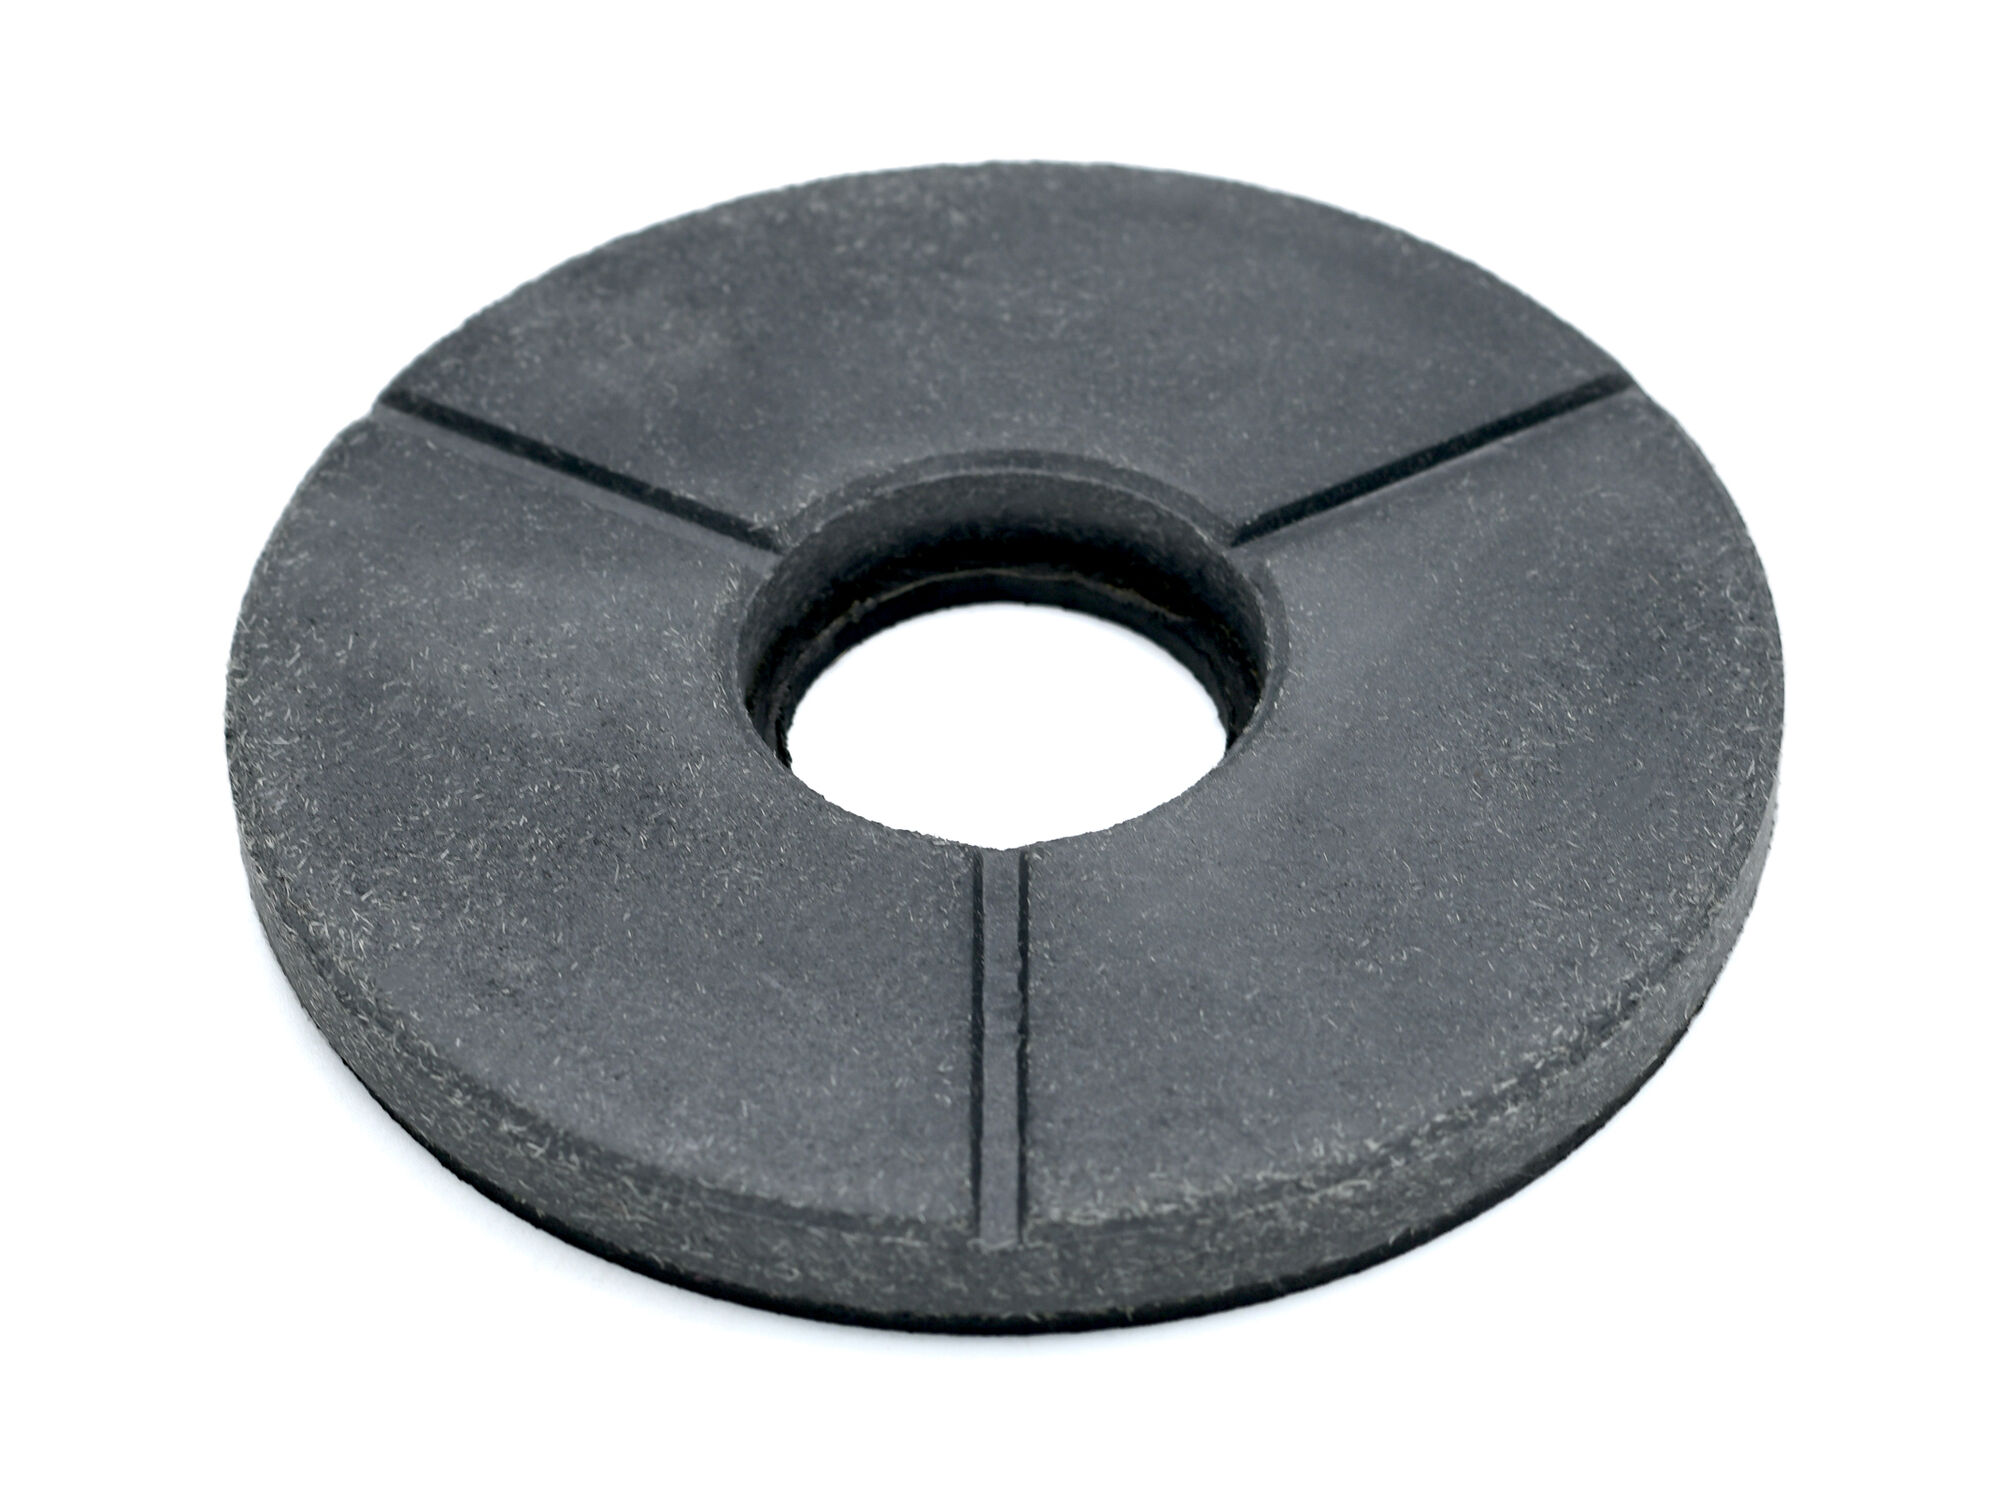 BUFF (бафф) полировальный для камня на резиновой основе, д 160 мм